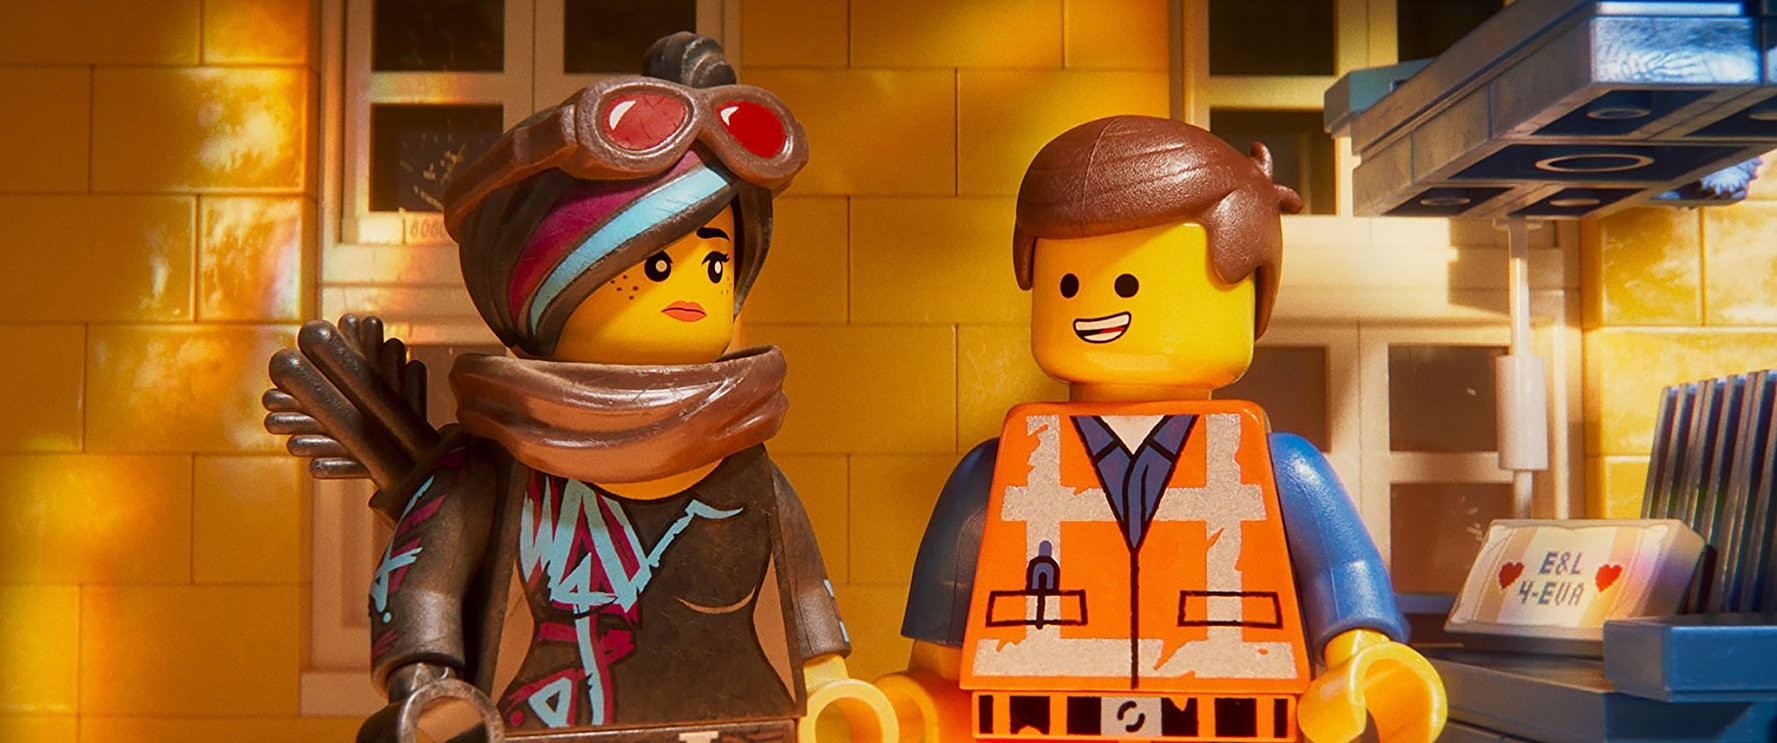 Кадр из фильма Лего Фильм 2 / The Lego Movie 2: The Second Part (2019)